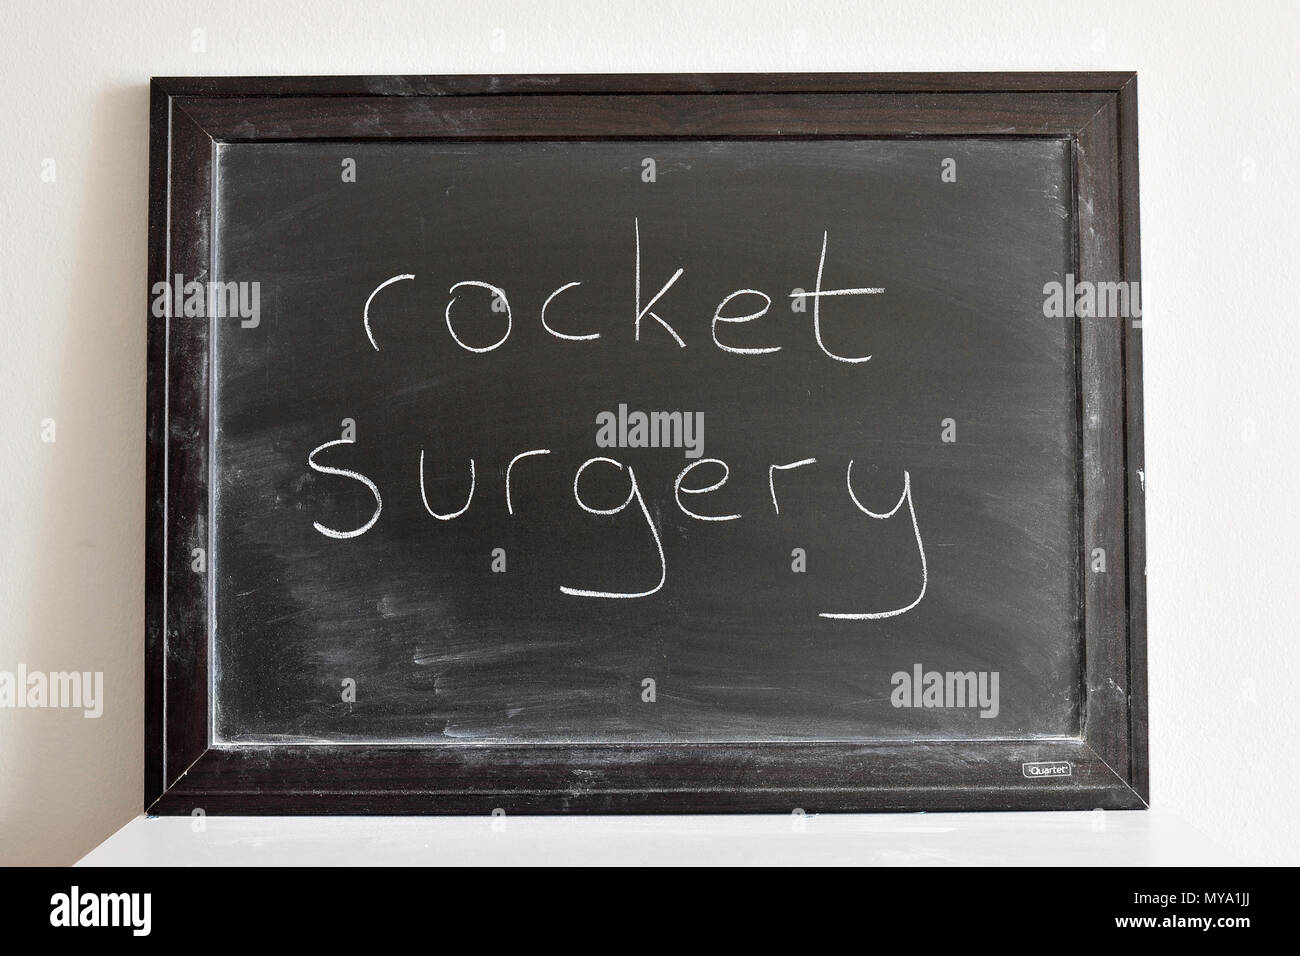 Rocket surgery written in white chalk on a blackboard Stock Photo